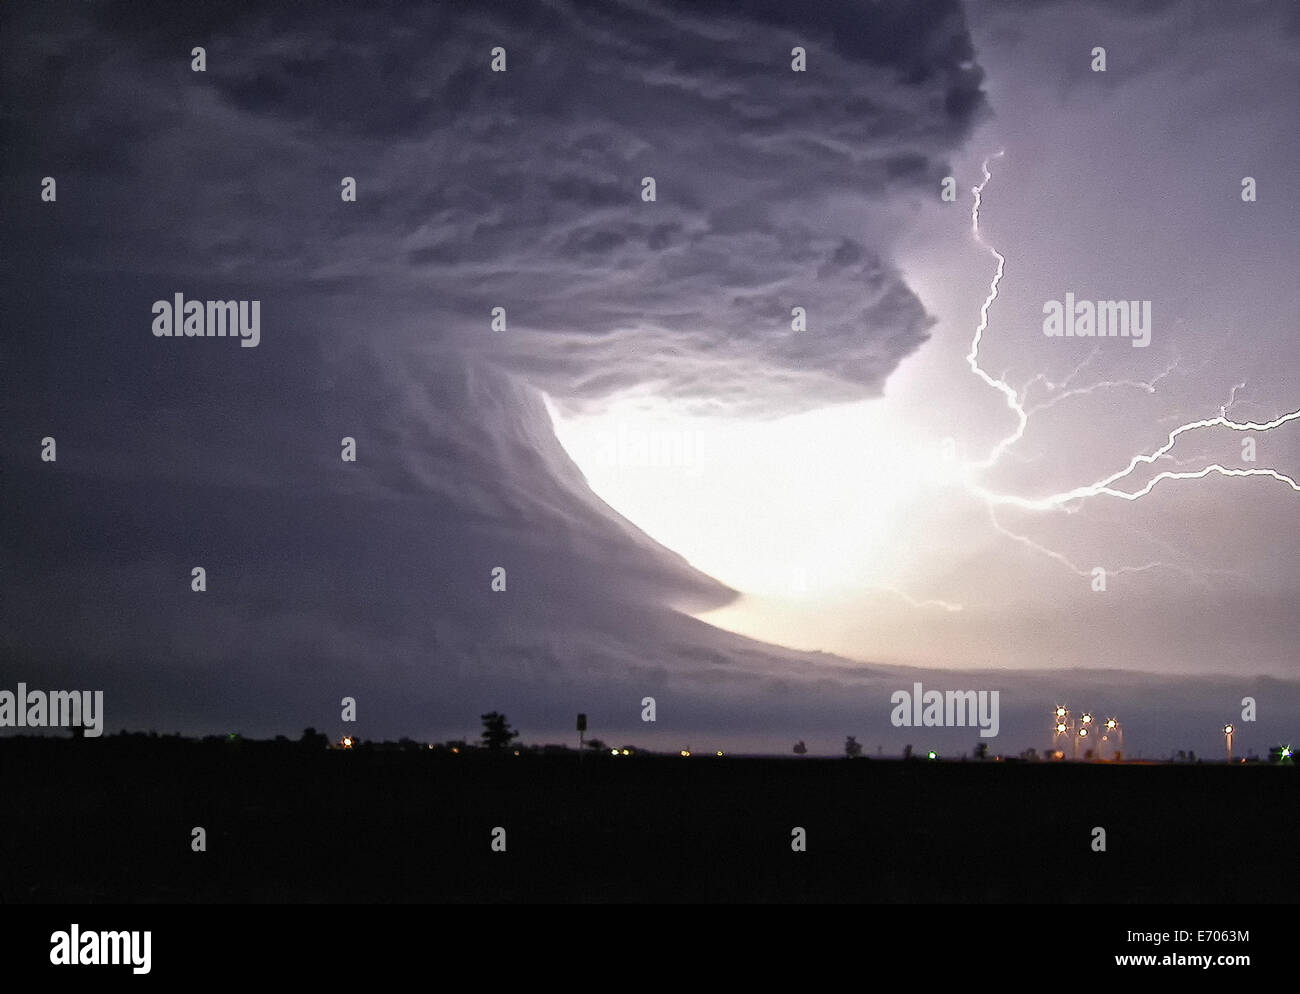 Un explosif de nuage à nuage tire de ce boulon supercell tornadiques avec rotation très structurés, Pampa, Texas, USA Banque D'Images